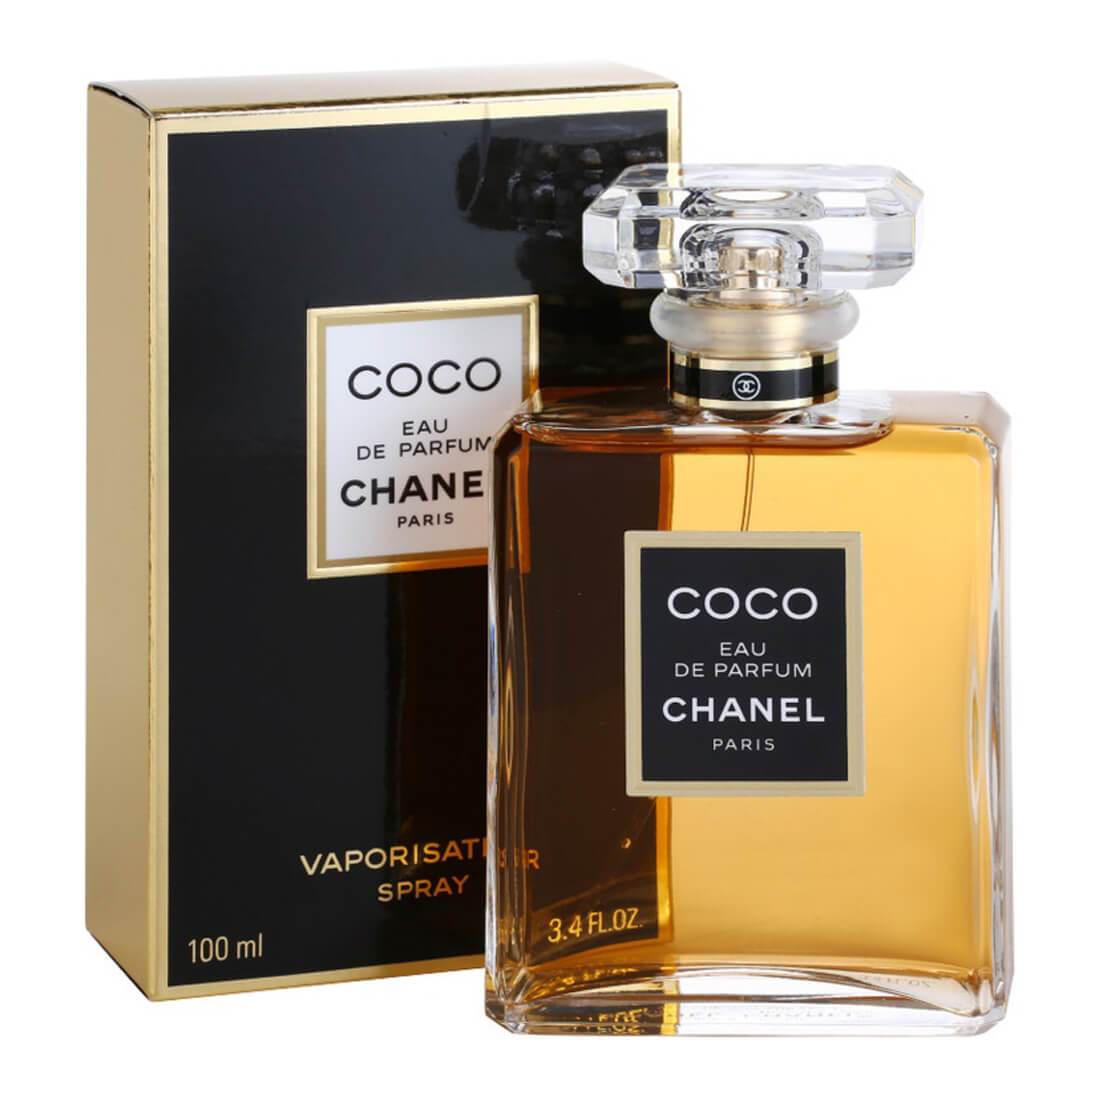 Chanel Coco EDP 100ml - Exquisite Women's Perfume